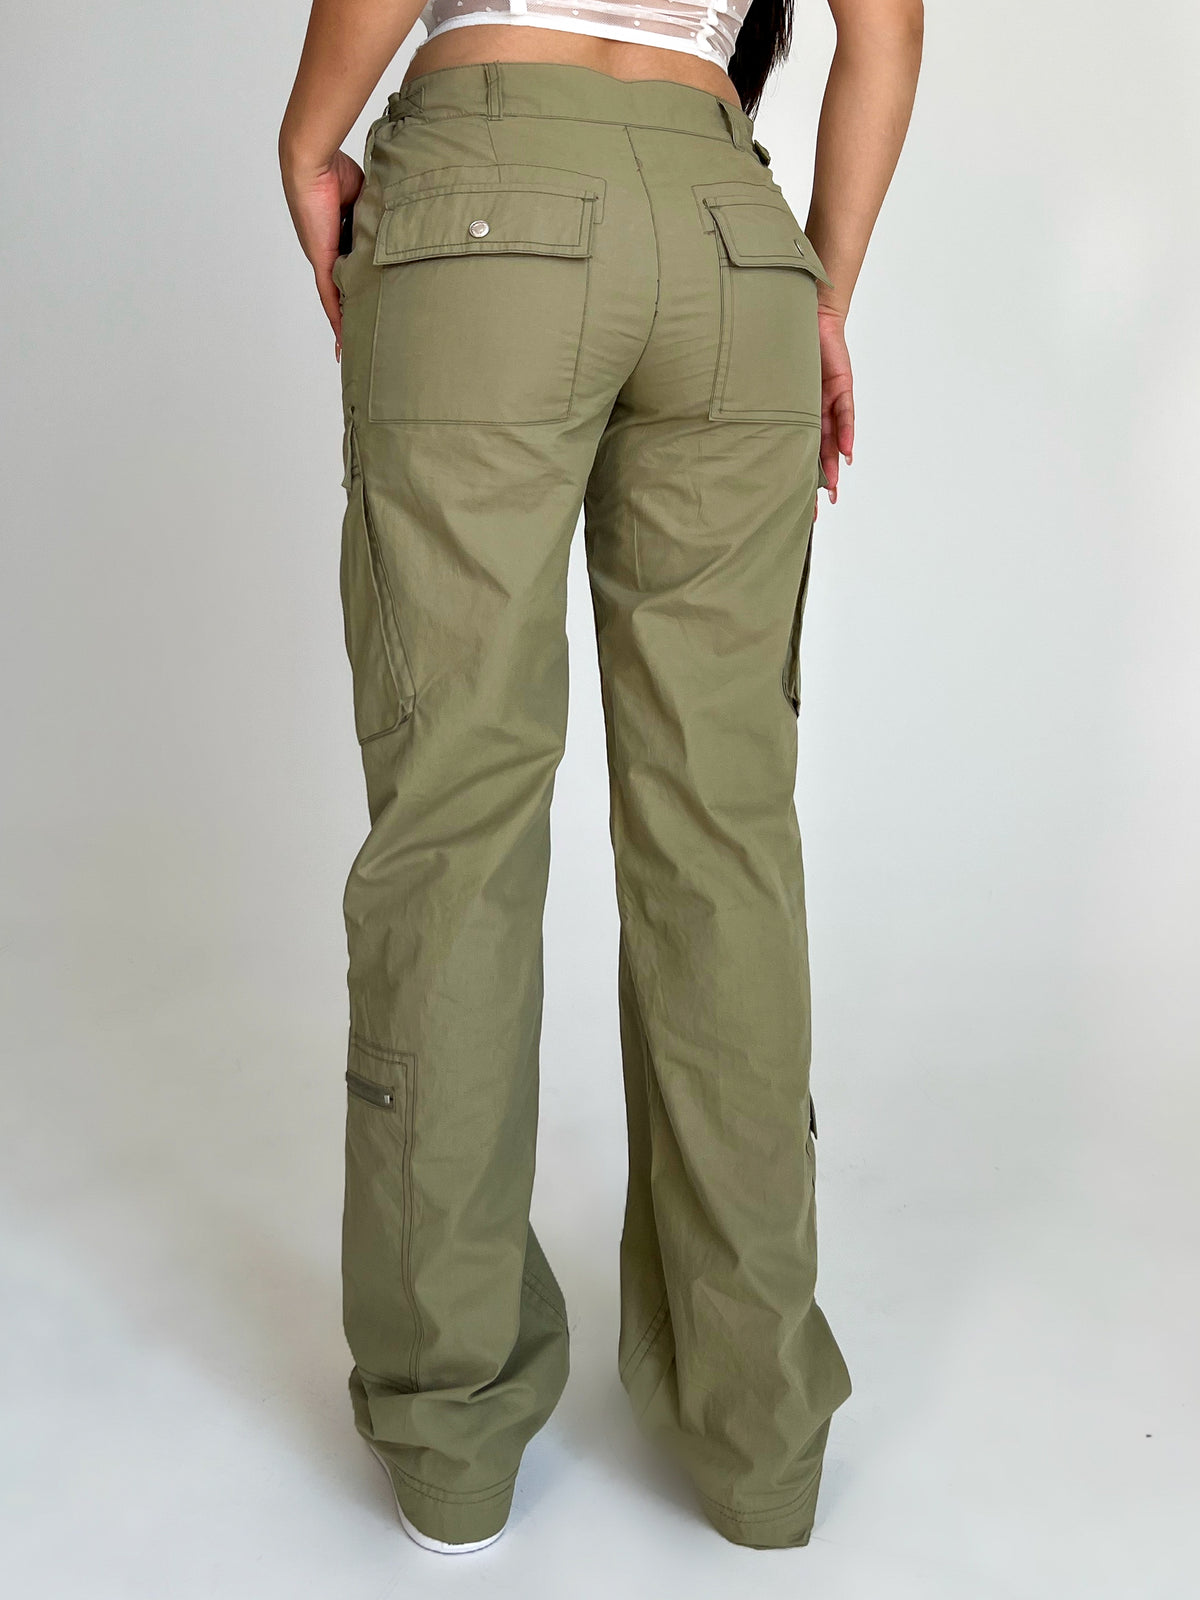 Karen Cargo Pants (Olive)